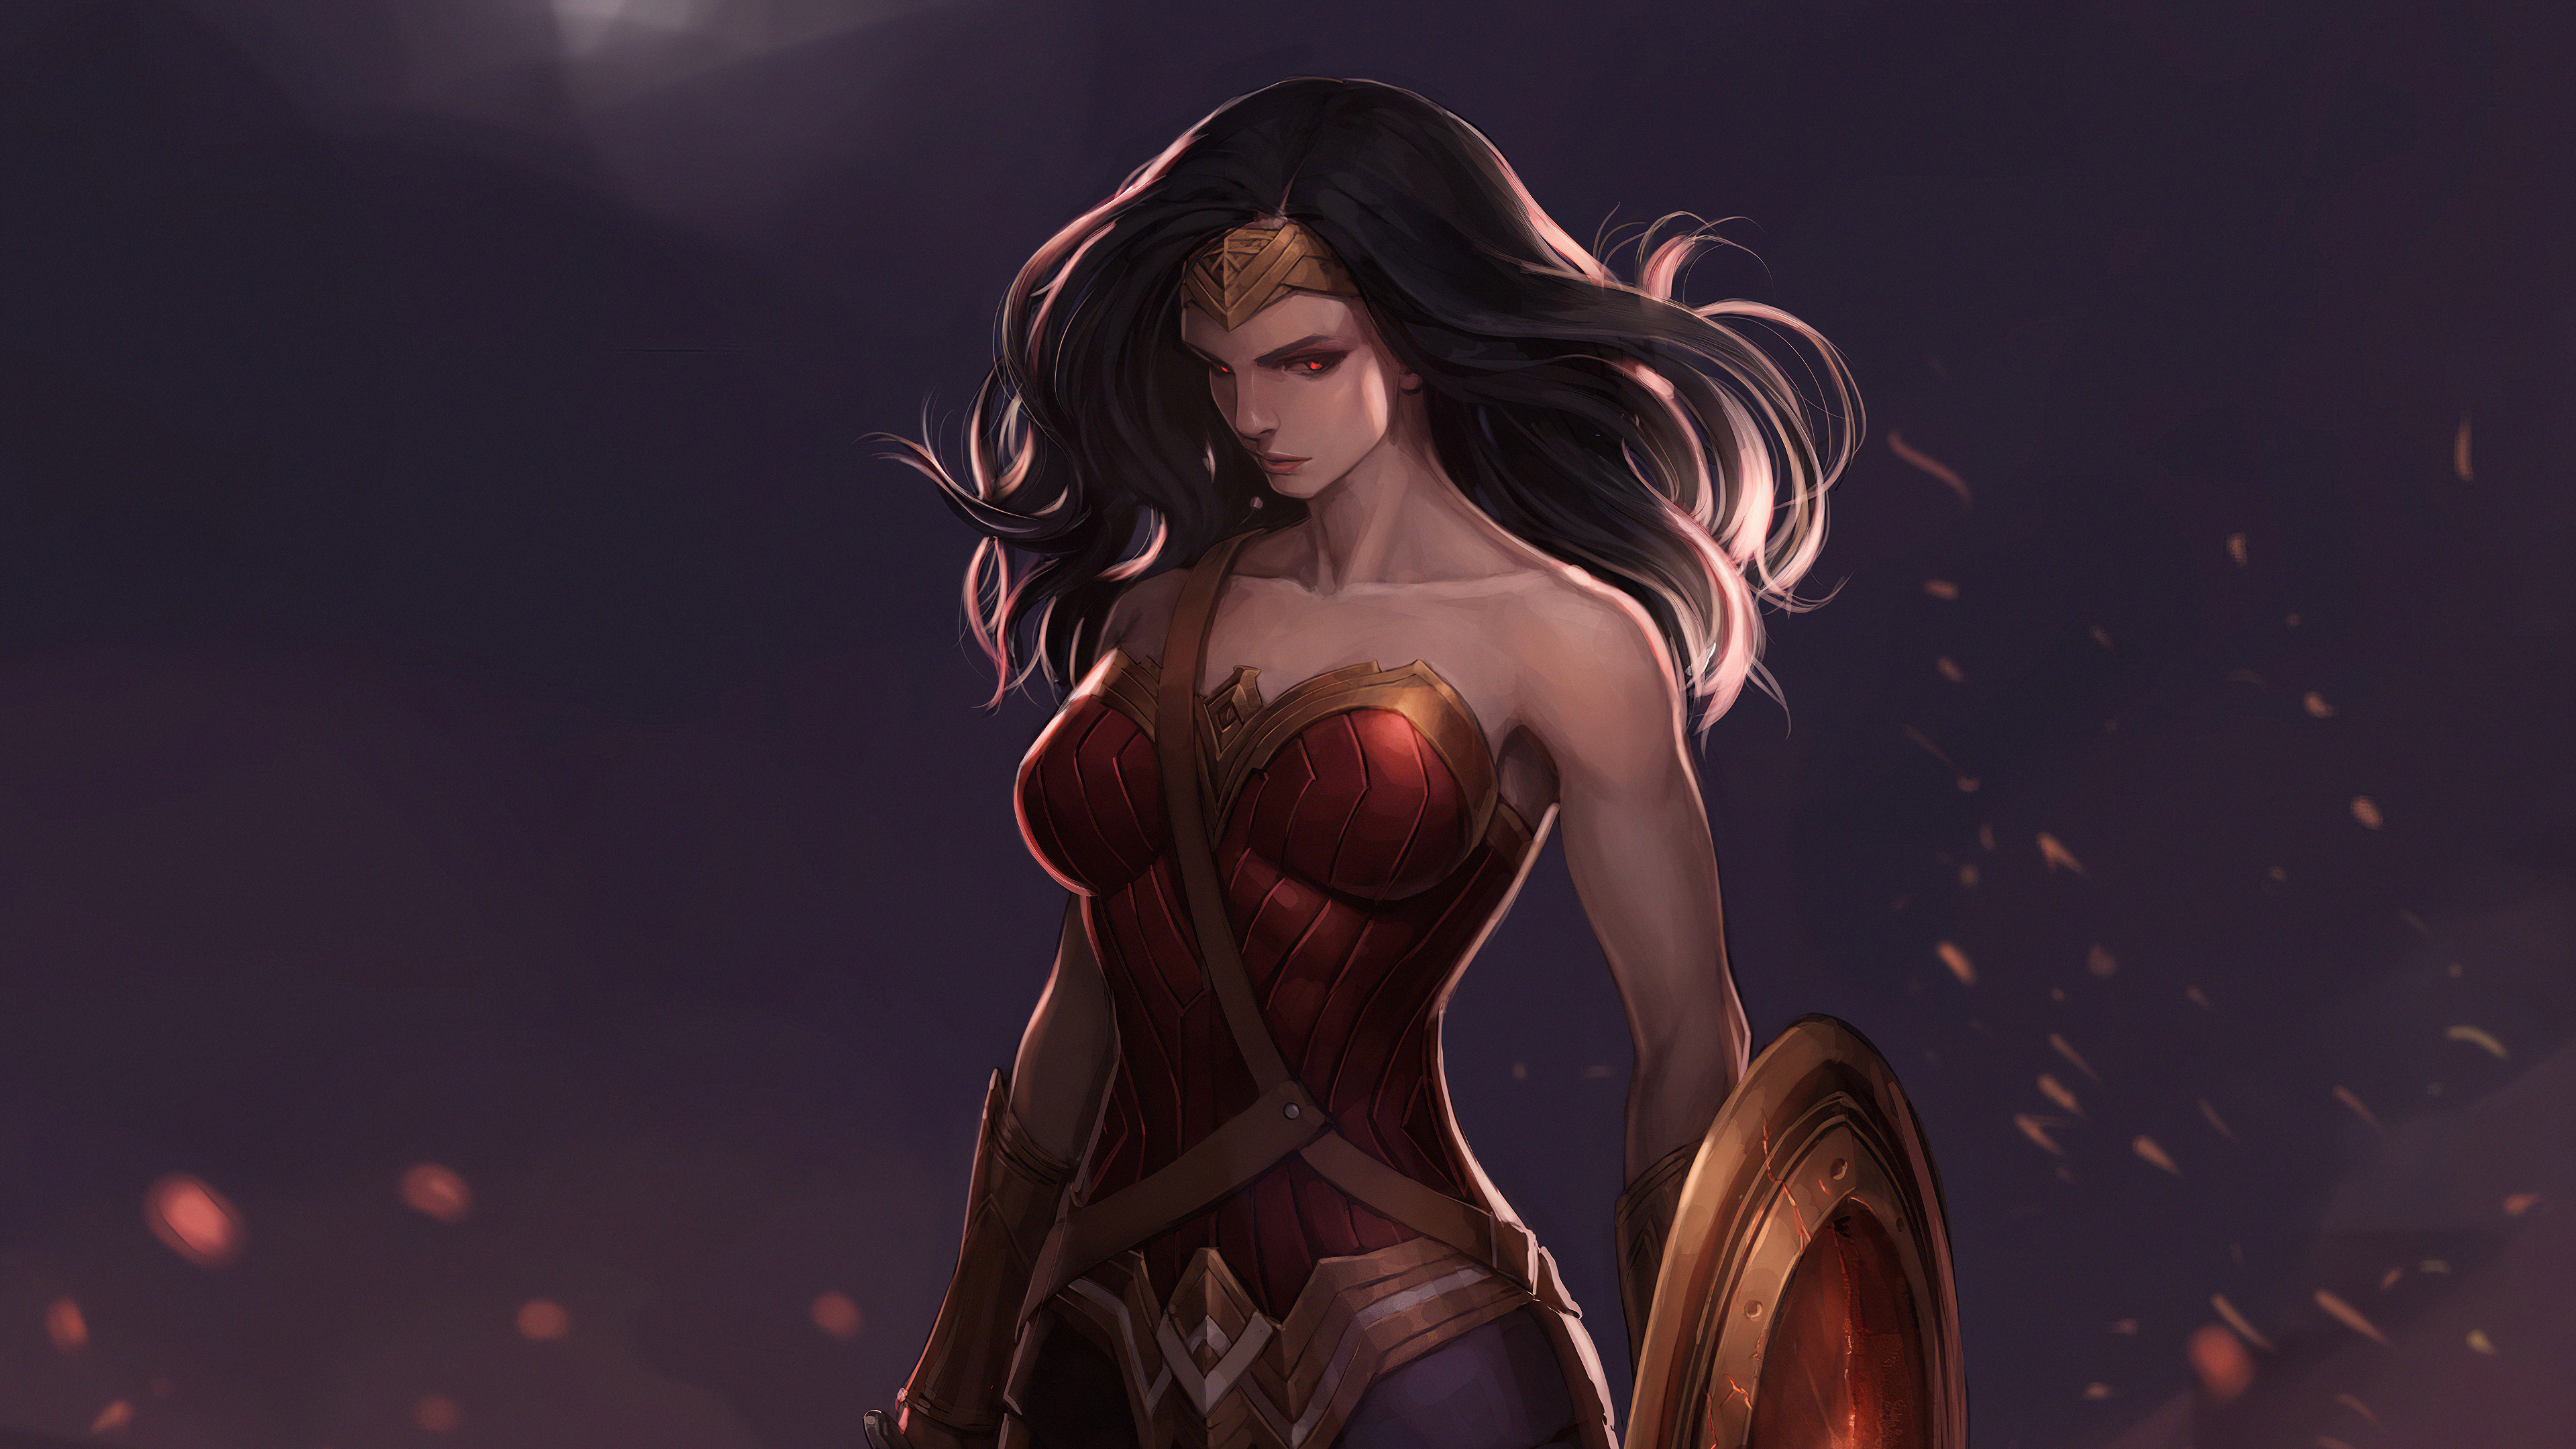 Wonder Woman Dark Art - Wonder Woman Fan Art - HD Wallpaper 